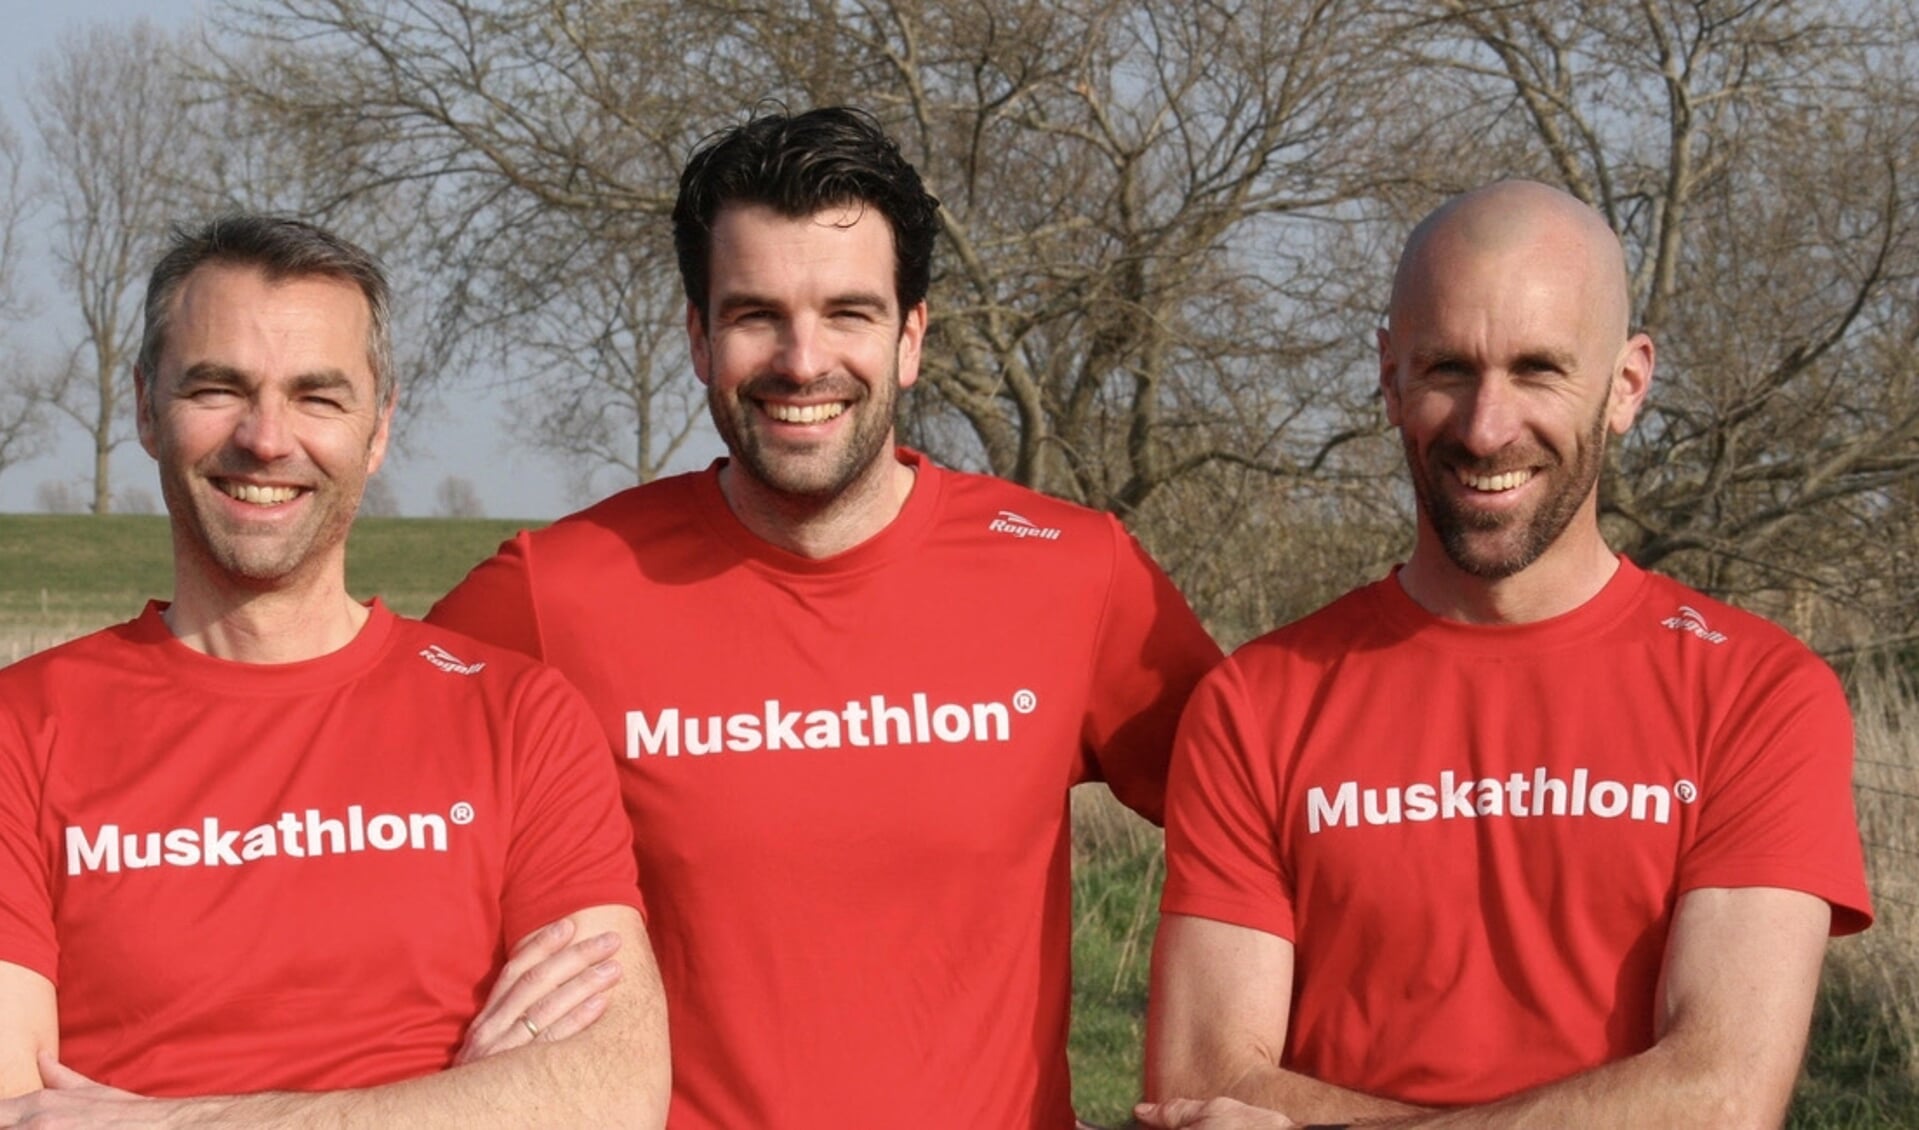 Remko Bal, Arco Melaard en Diederik van Putten gaan naar Tanzania om een Muskathlon (marathon) te lopen voor kindsponsor Compassion.